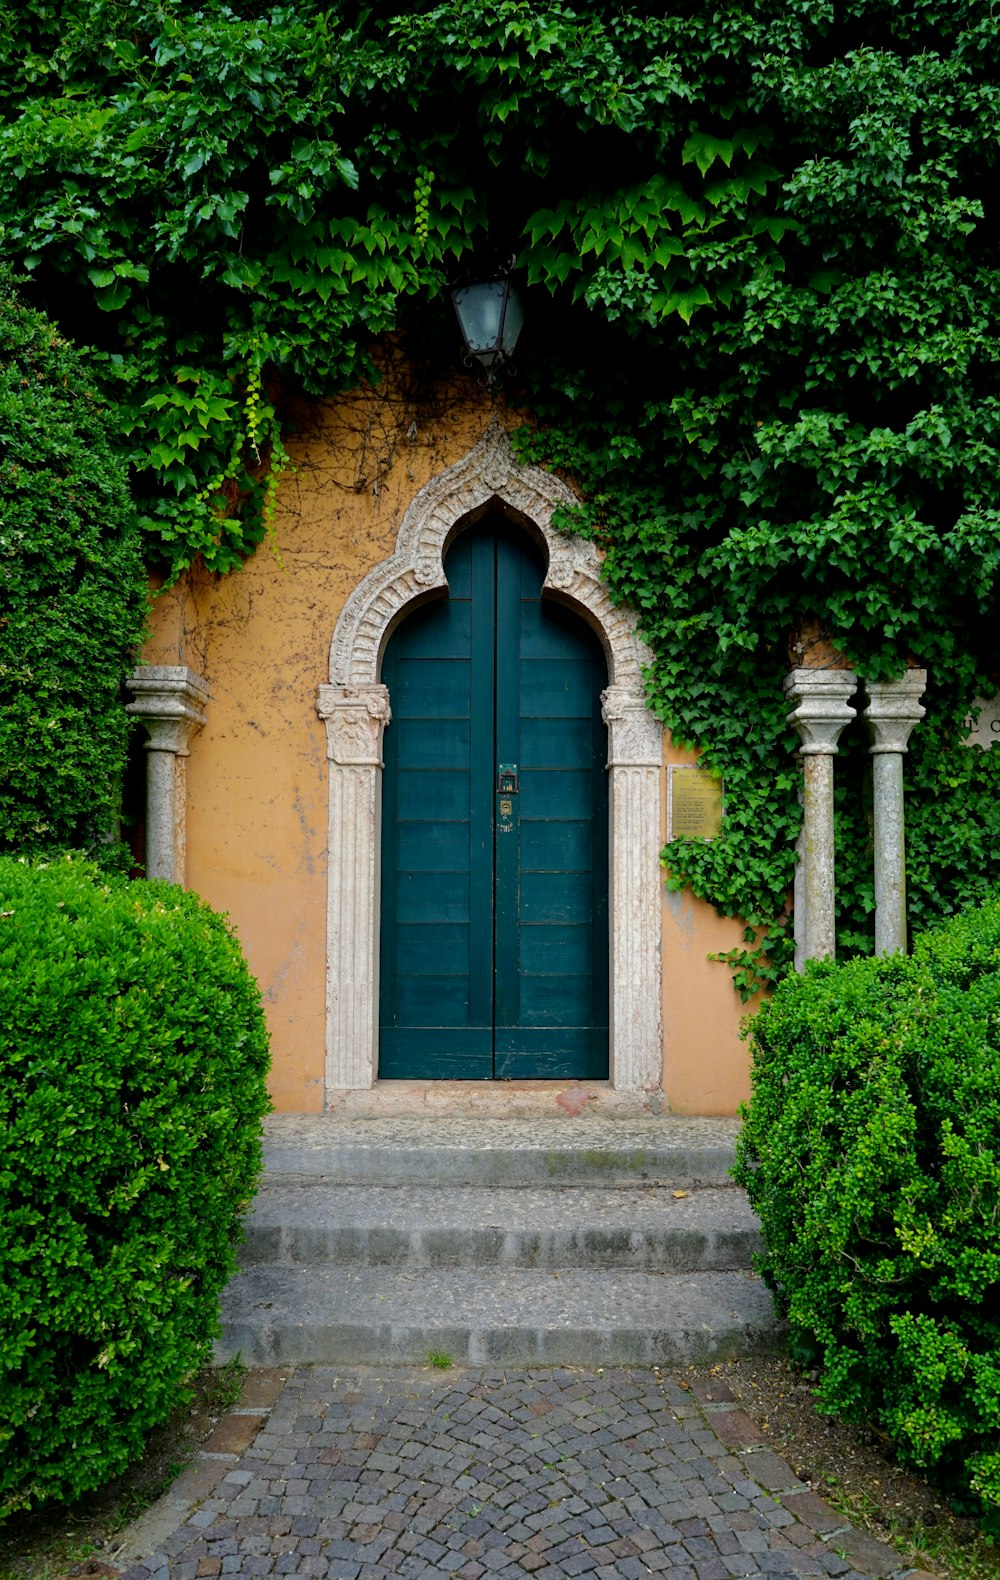 닫힌 녹색 나무 문